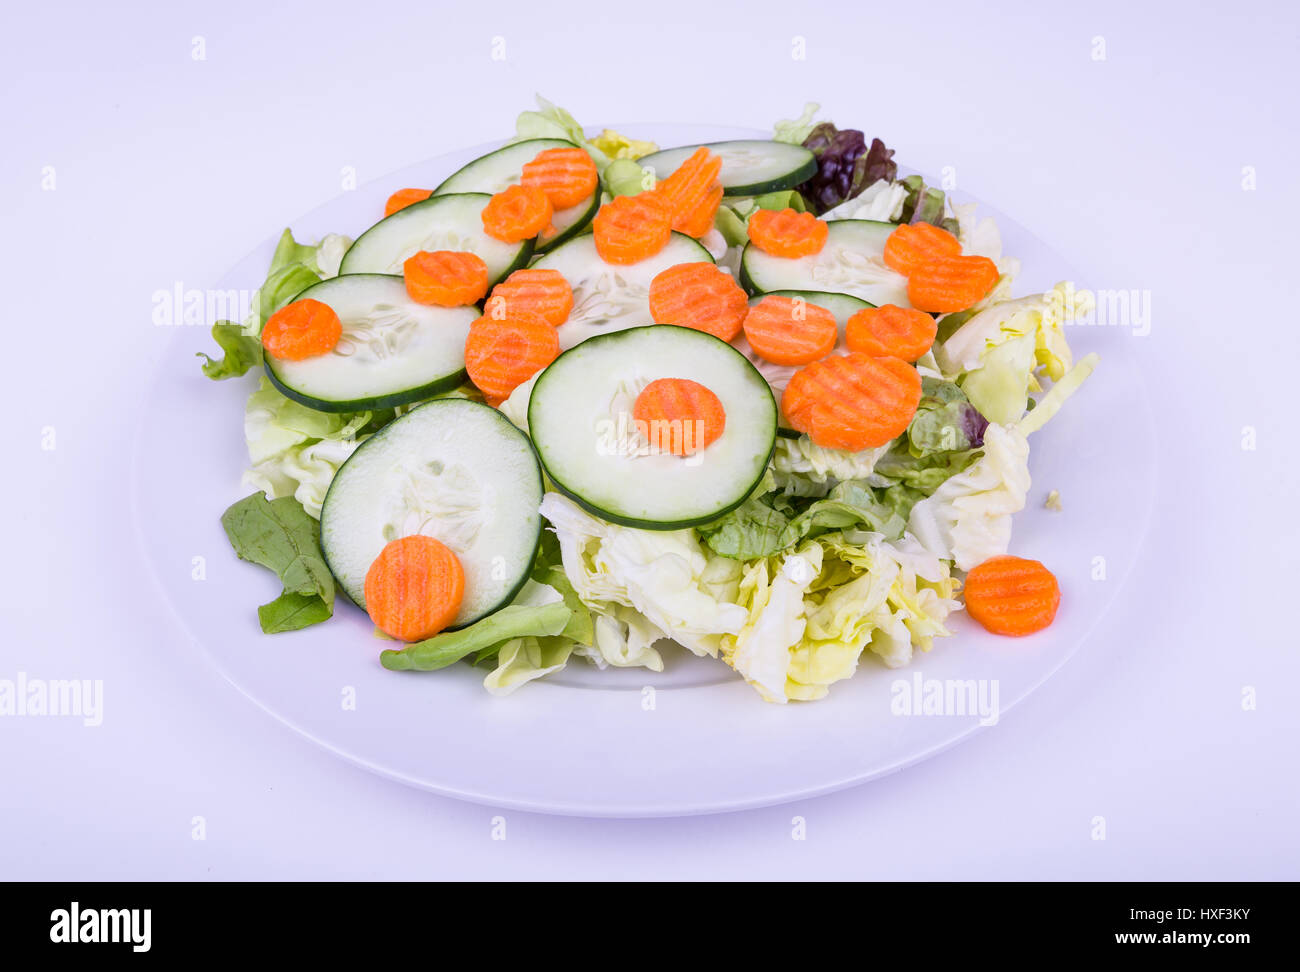 Una fresca ensalada verde de lechuga mixta, rodajas de pepino y zanahoria Foto de stock